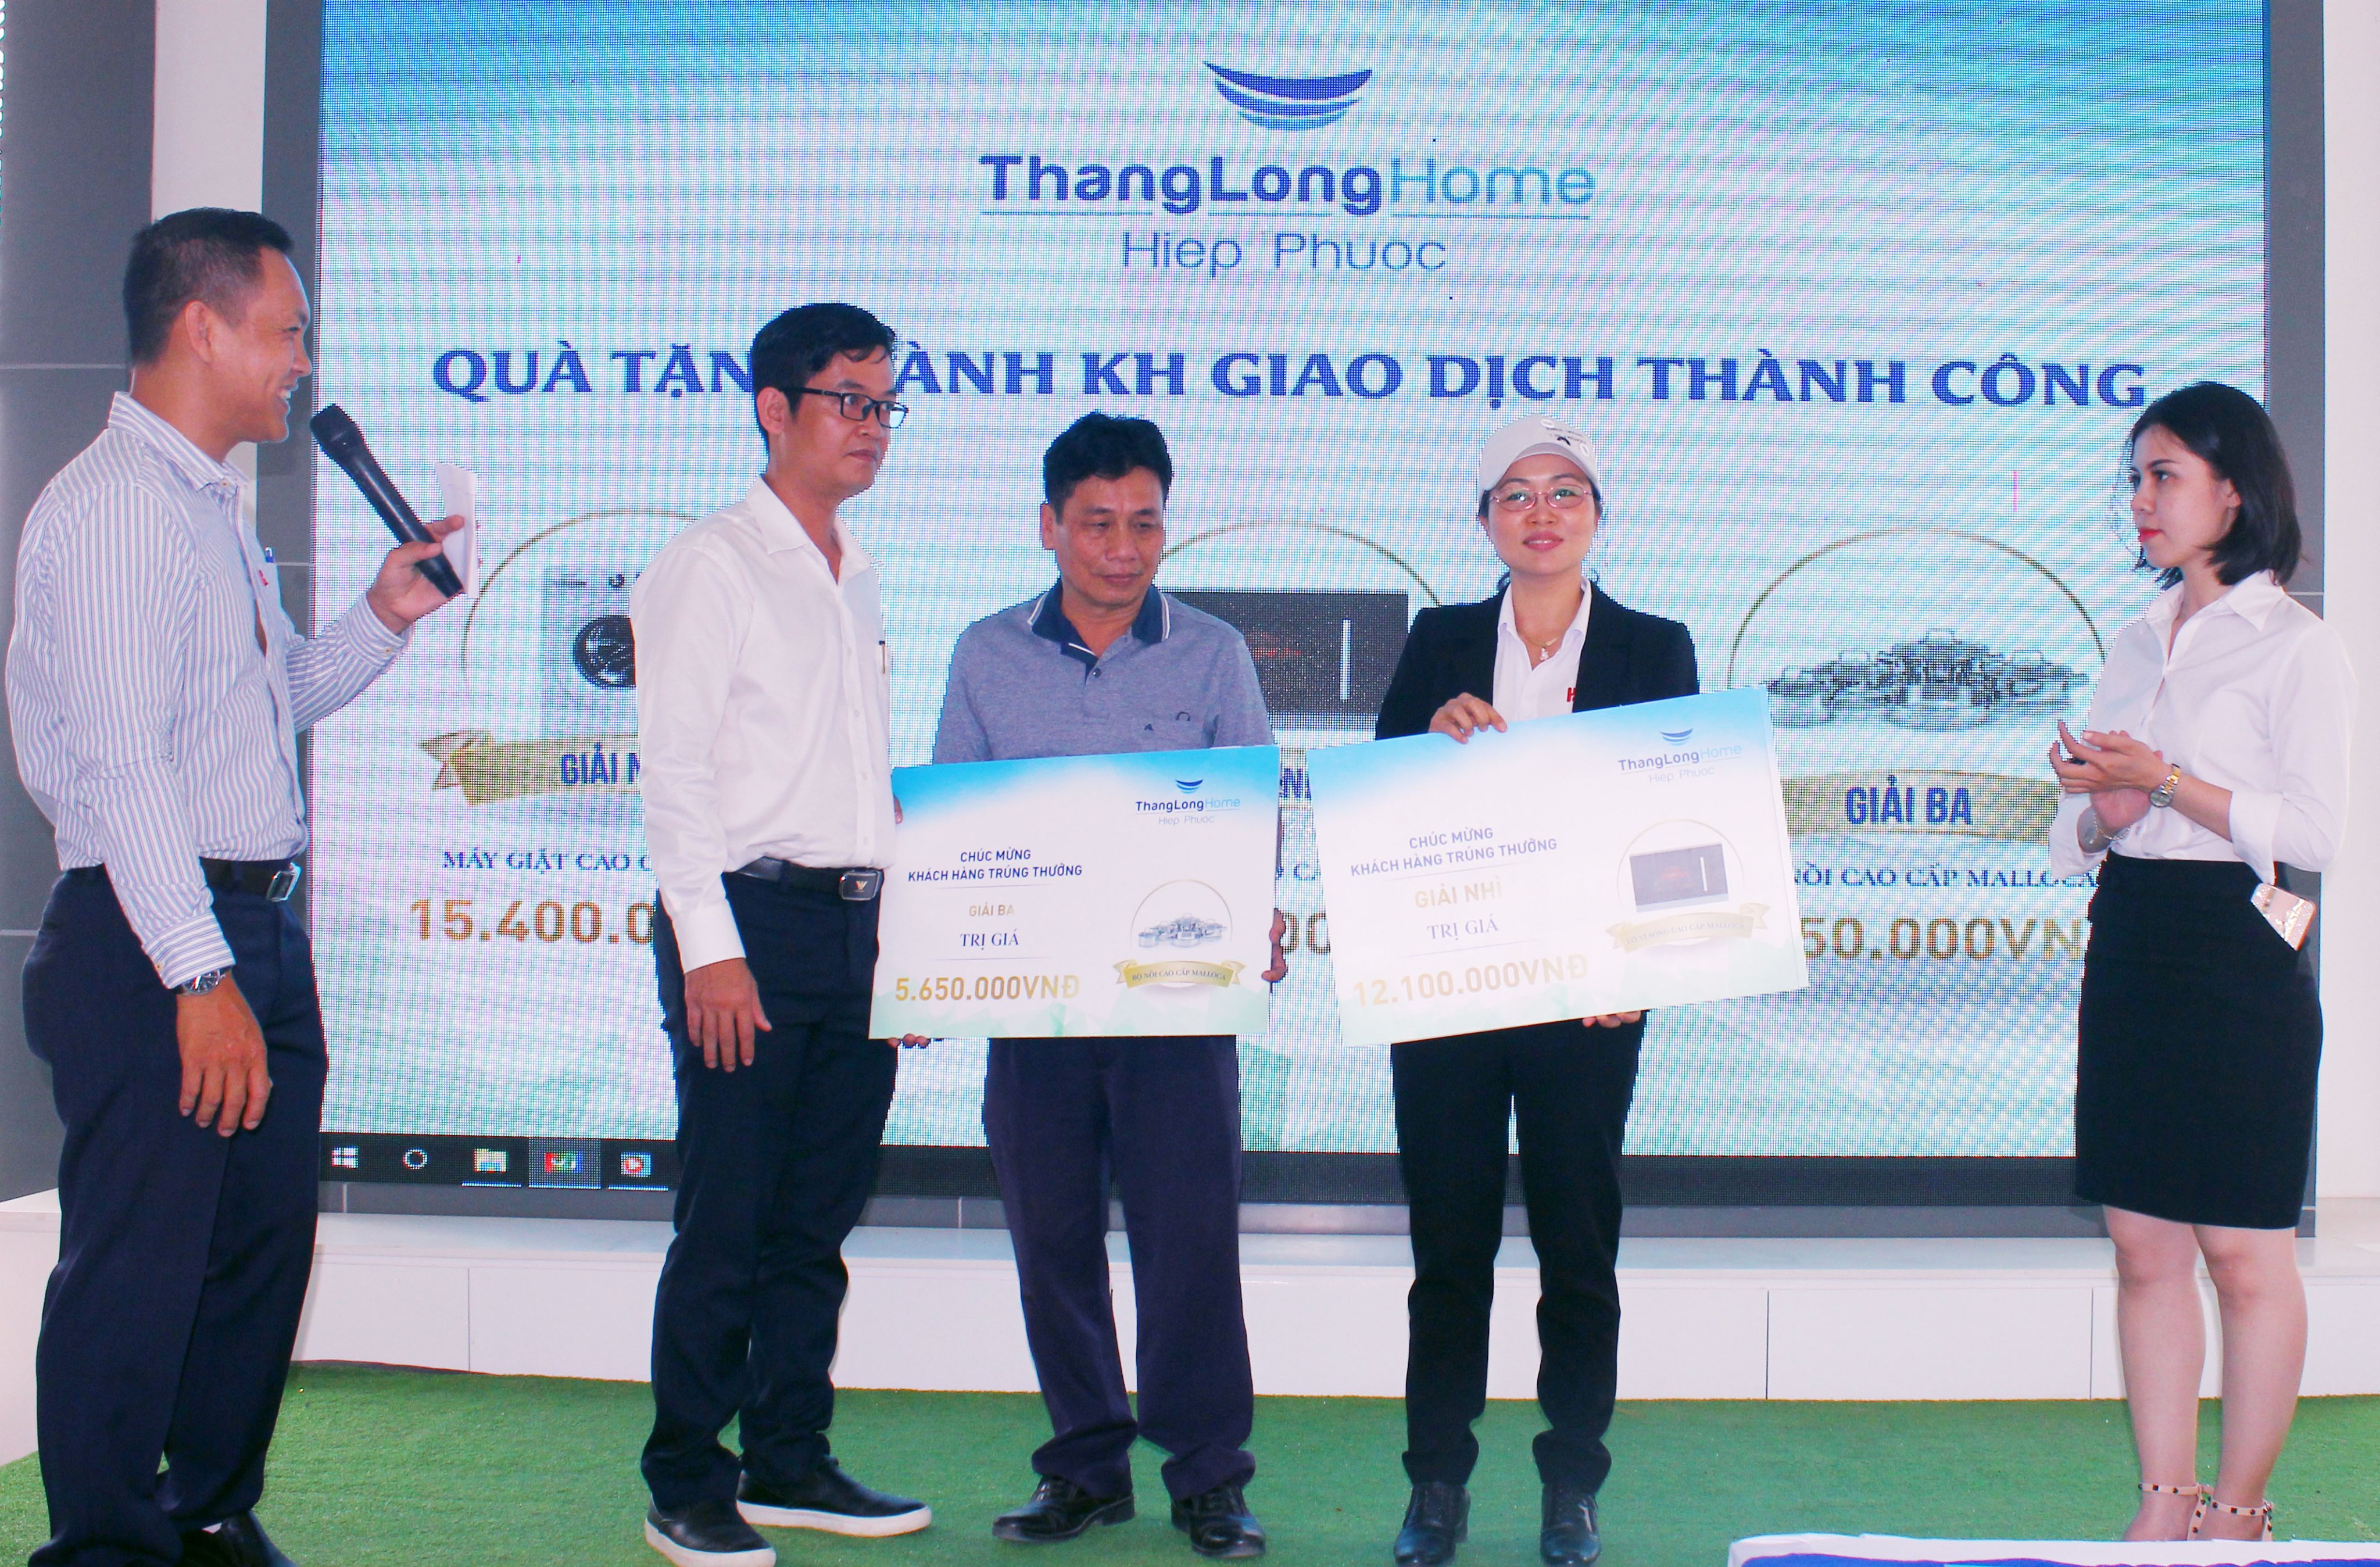 Mở bán đợt cuối dự án Thang Long Home - Hiệp Phước